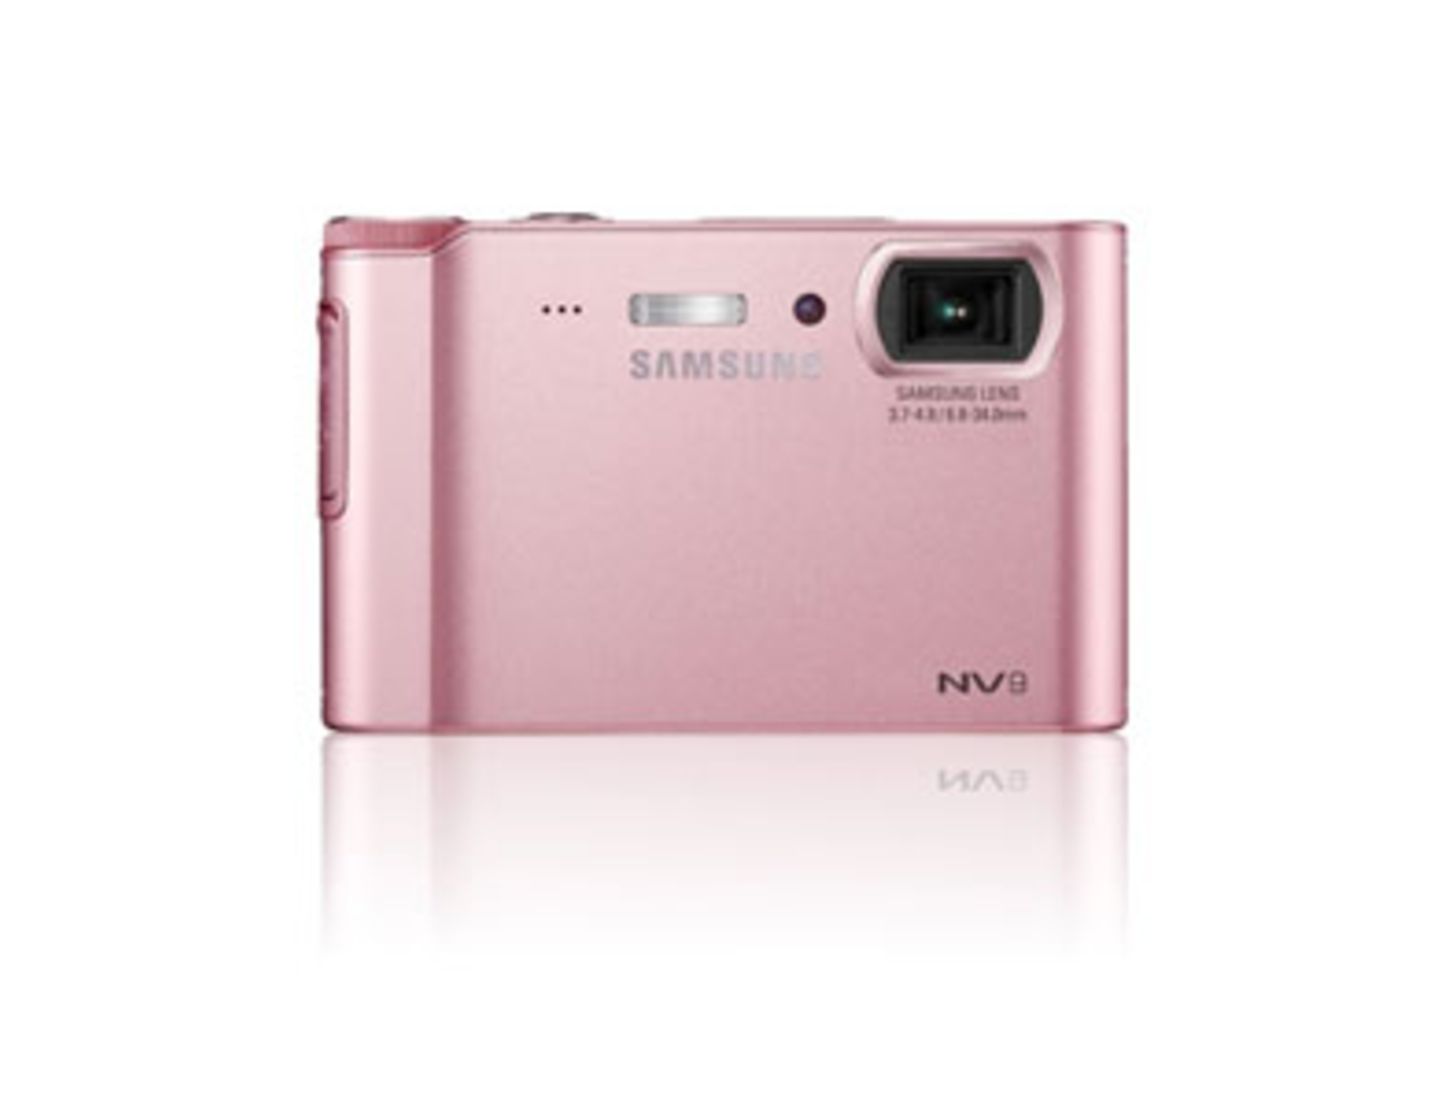 Die Kamera Samsung NV9 hat nicht nur ein edles Design, sie versteckt auch allerlei Features hinter der Linse: Camcorder, MP3-Player, portabler Mediaplayer, Textviewer, digitales Diktiergerät und ein mobiles Speichermedium. Um 300 Euro. Mehr Informationen findet ihr bei Samsung.